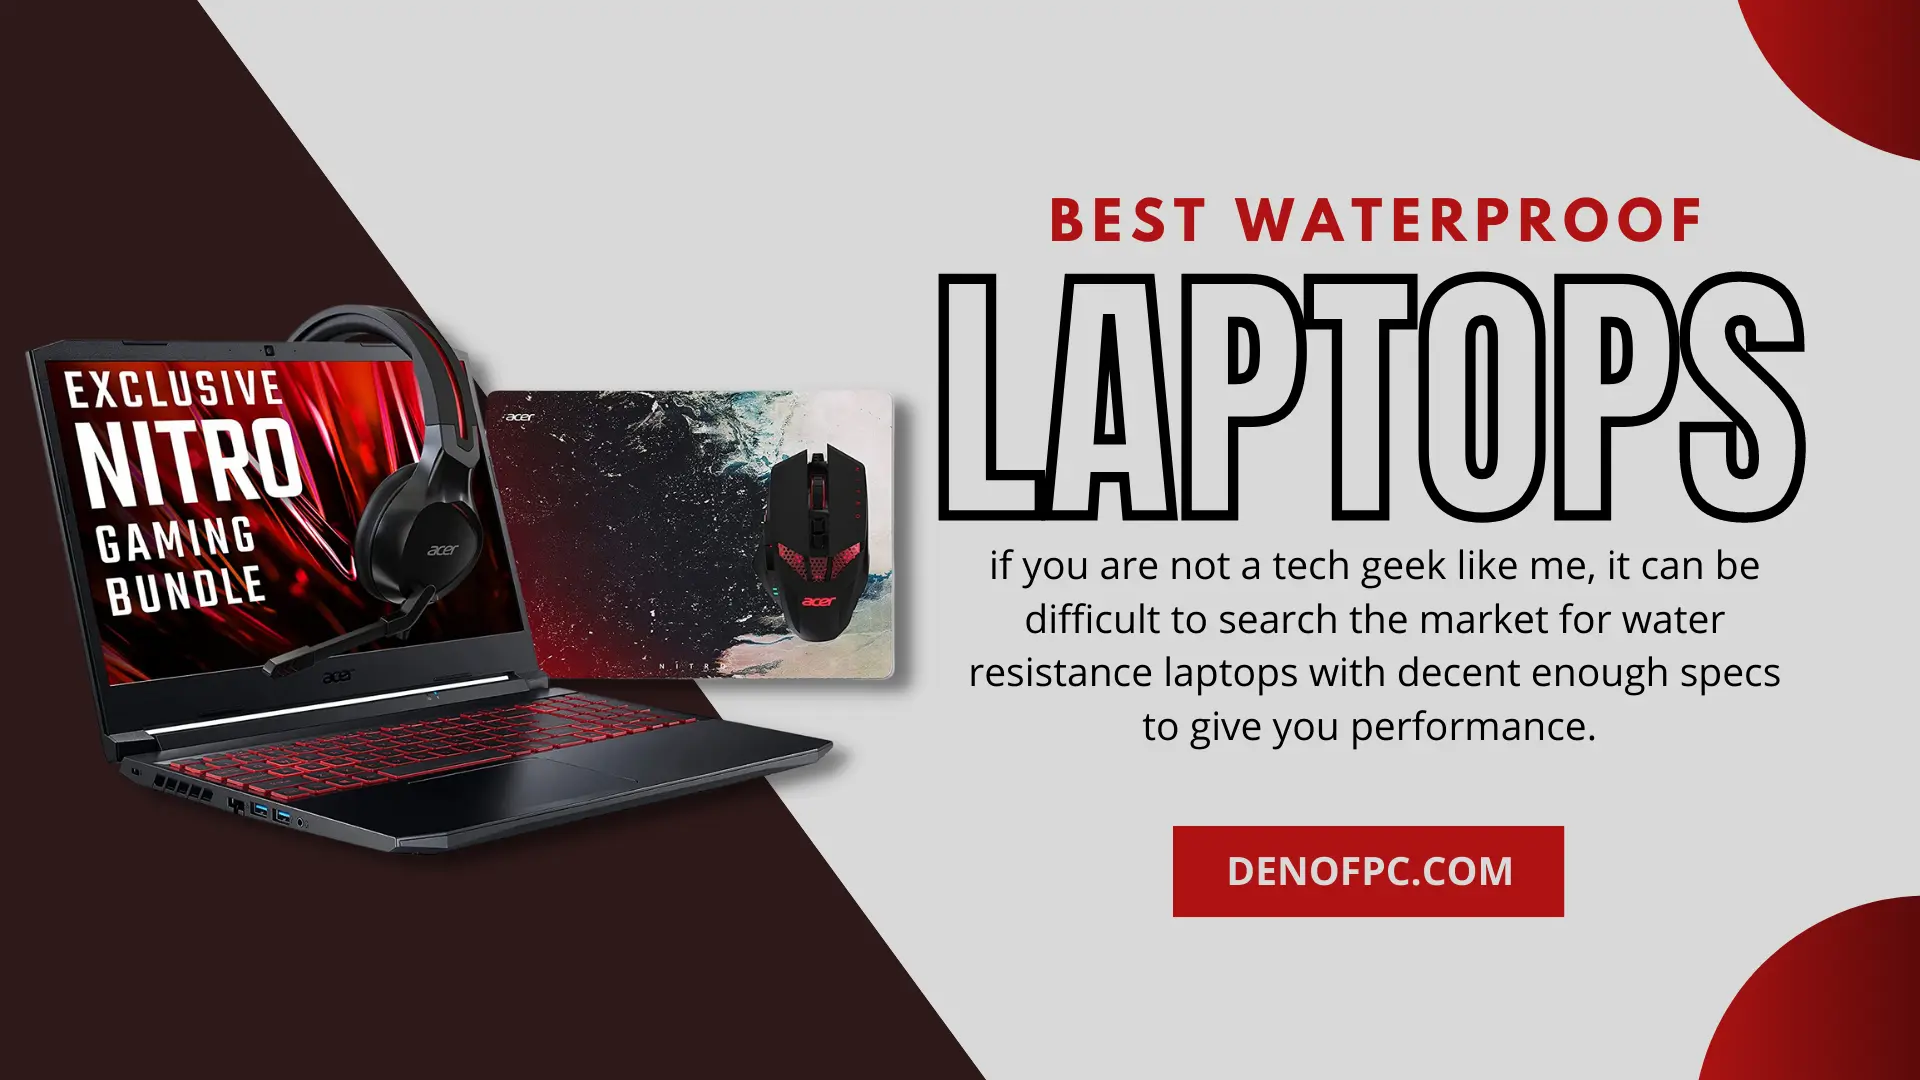 Best Waterproof Laptops